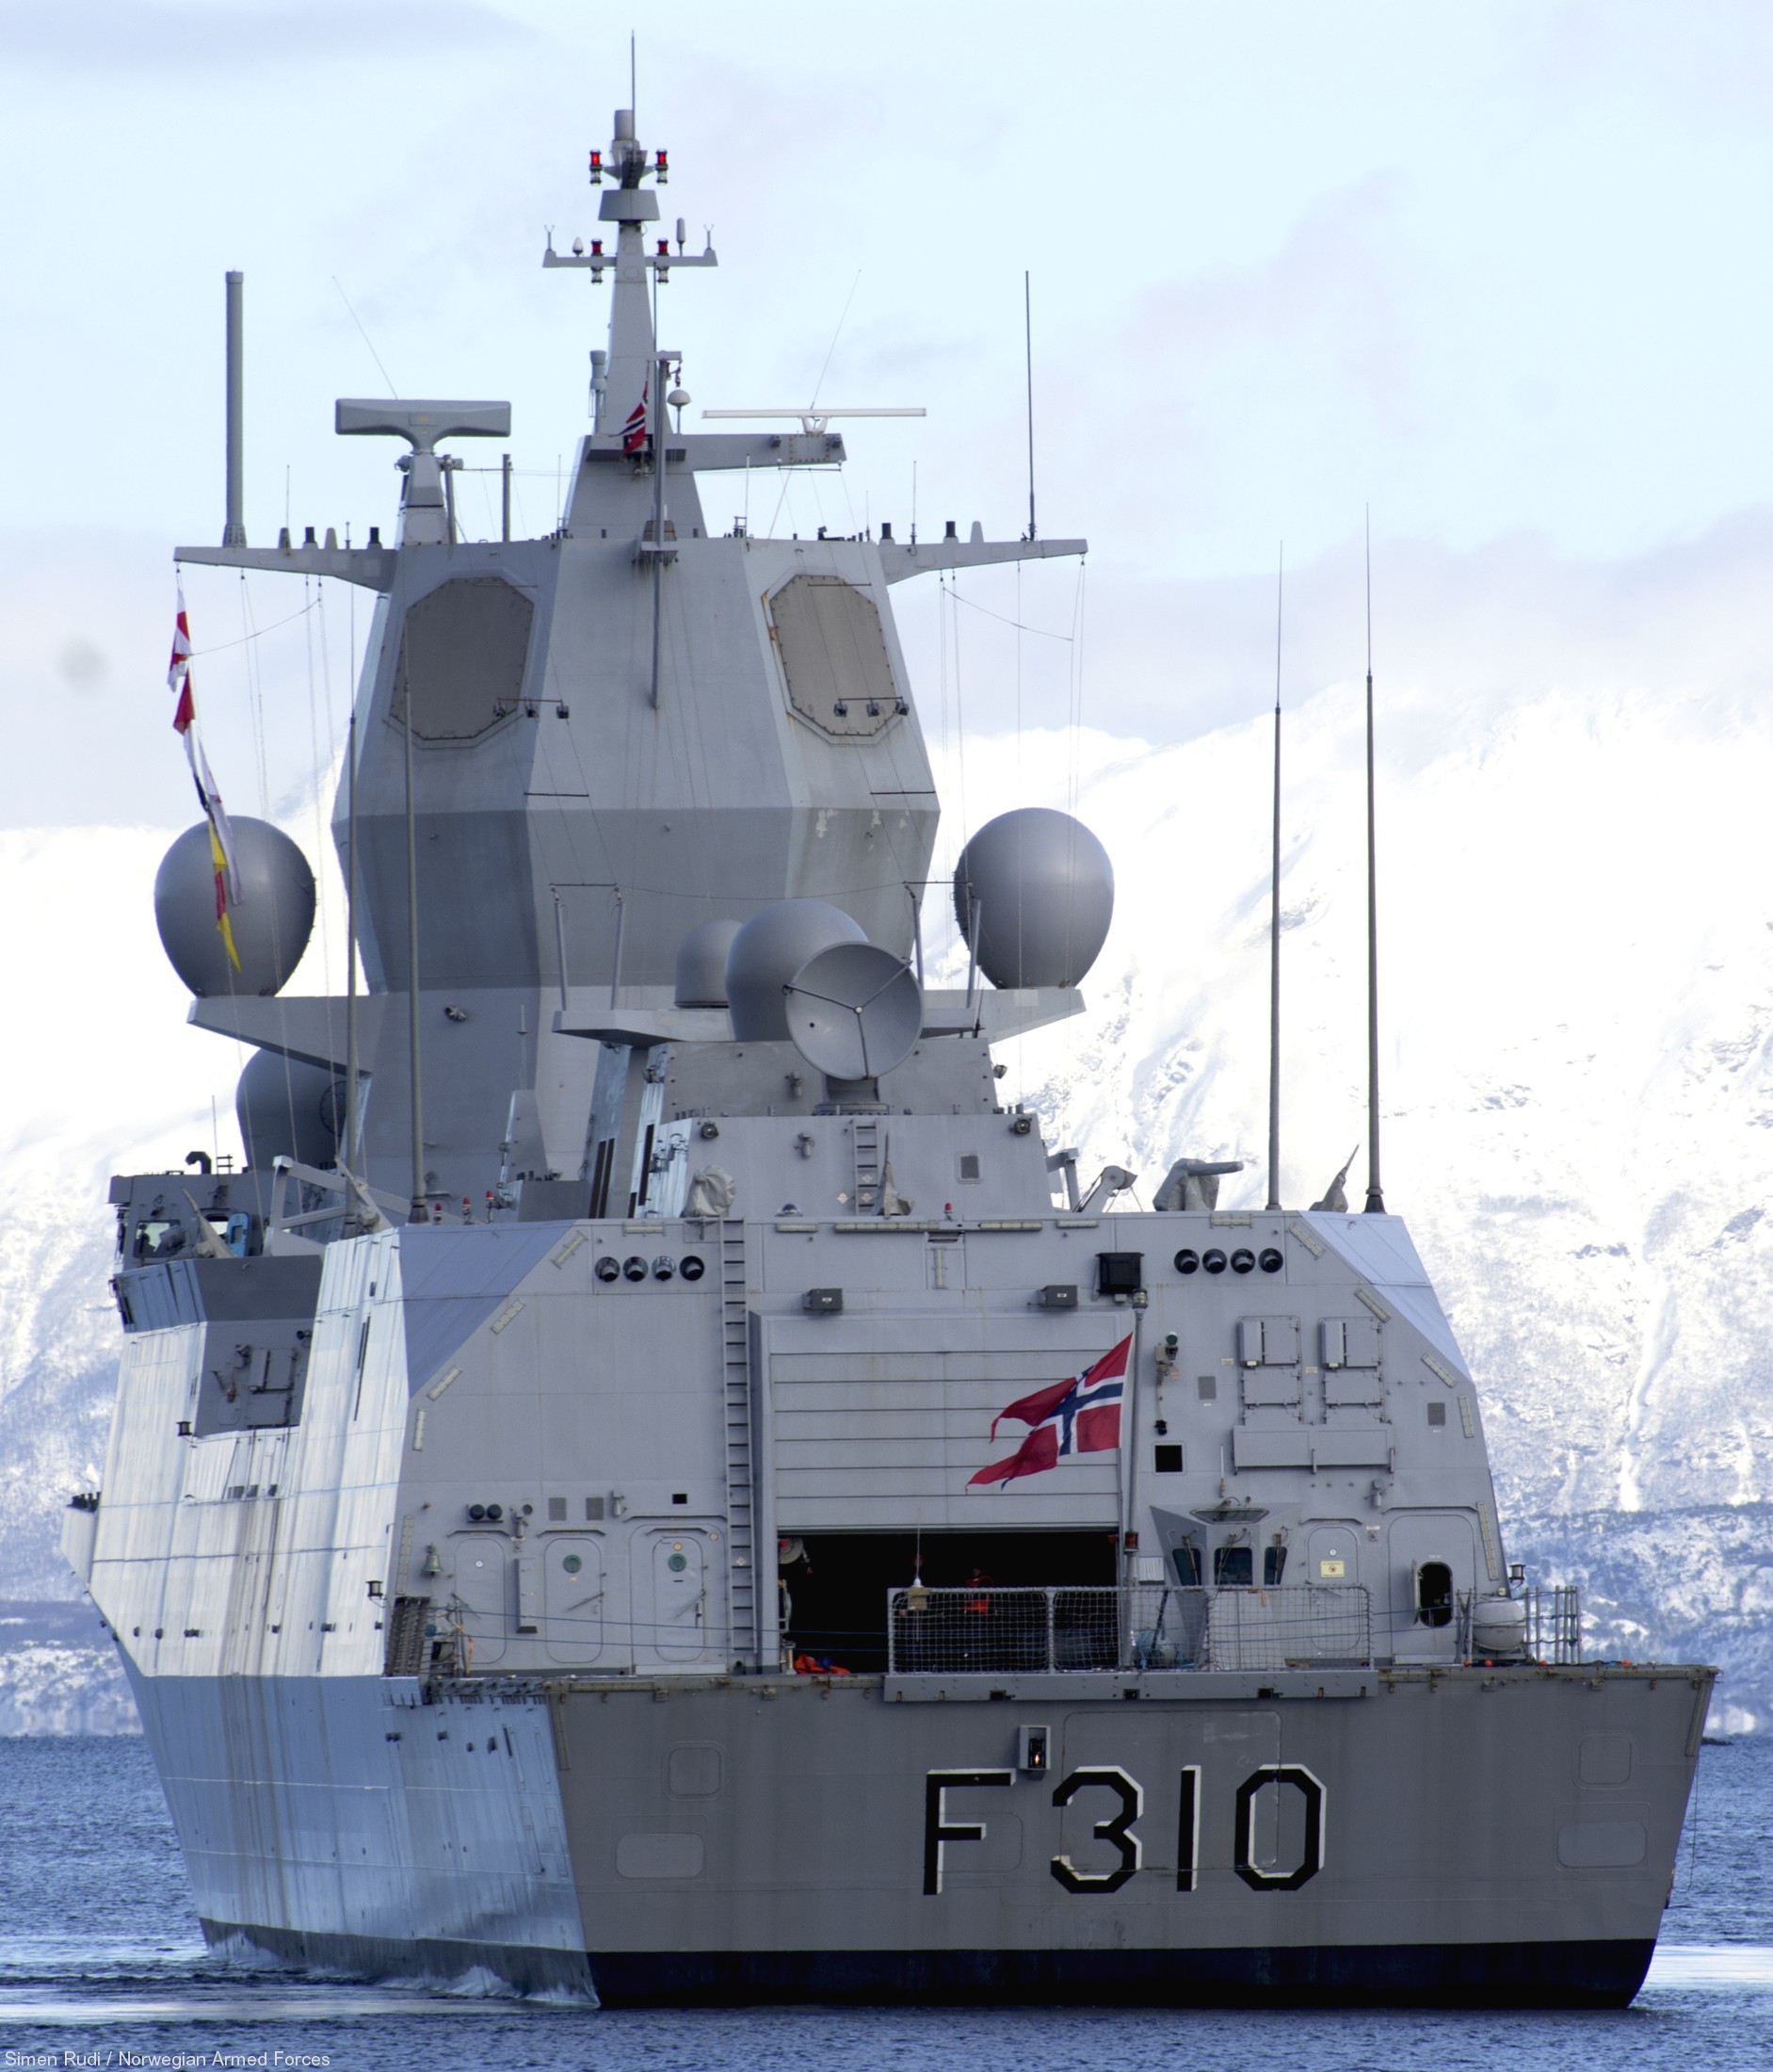 f-310 fridtjof nansen hnoms knm frigate royal norwegian navy sjoforsvaret 18